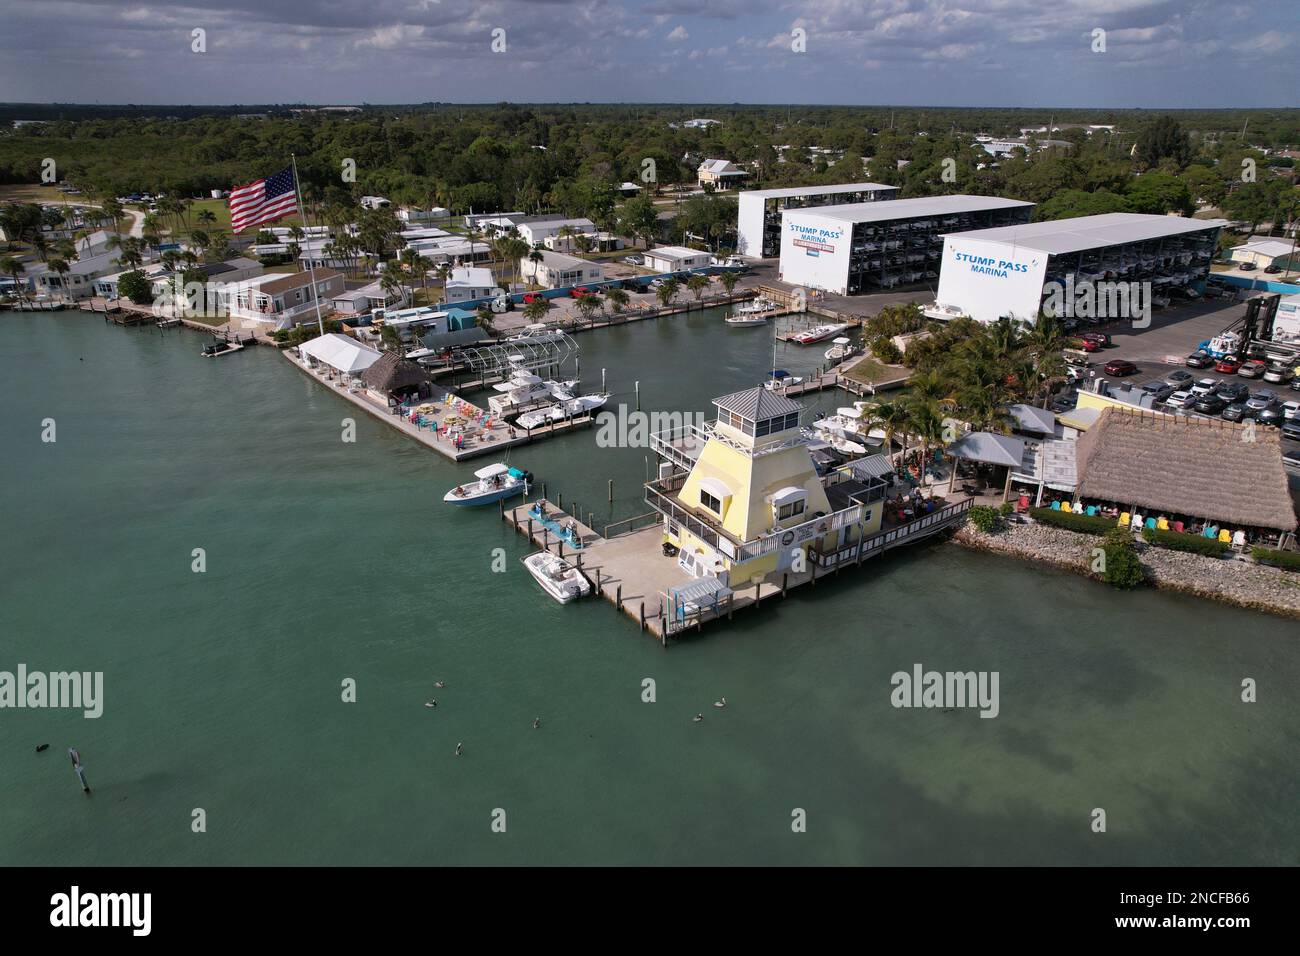 Vue aérienne de la marina et du phare avec une cabane tiki, stockage de bateaux. Englewood Floride États-Unis. Banque D'Images